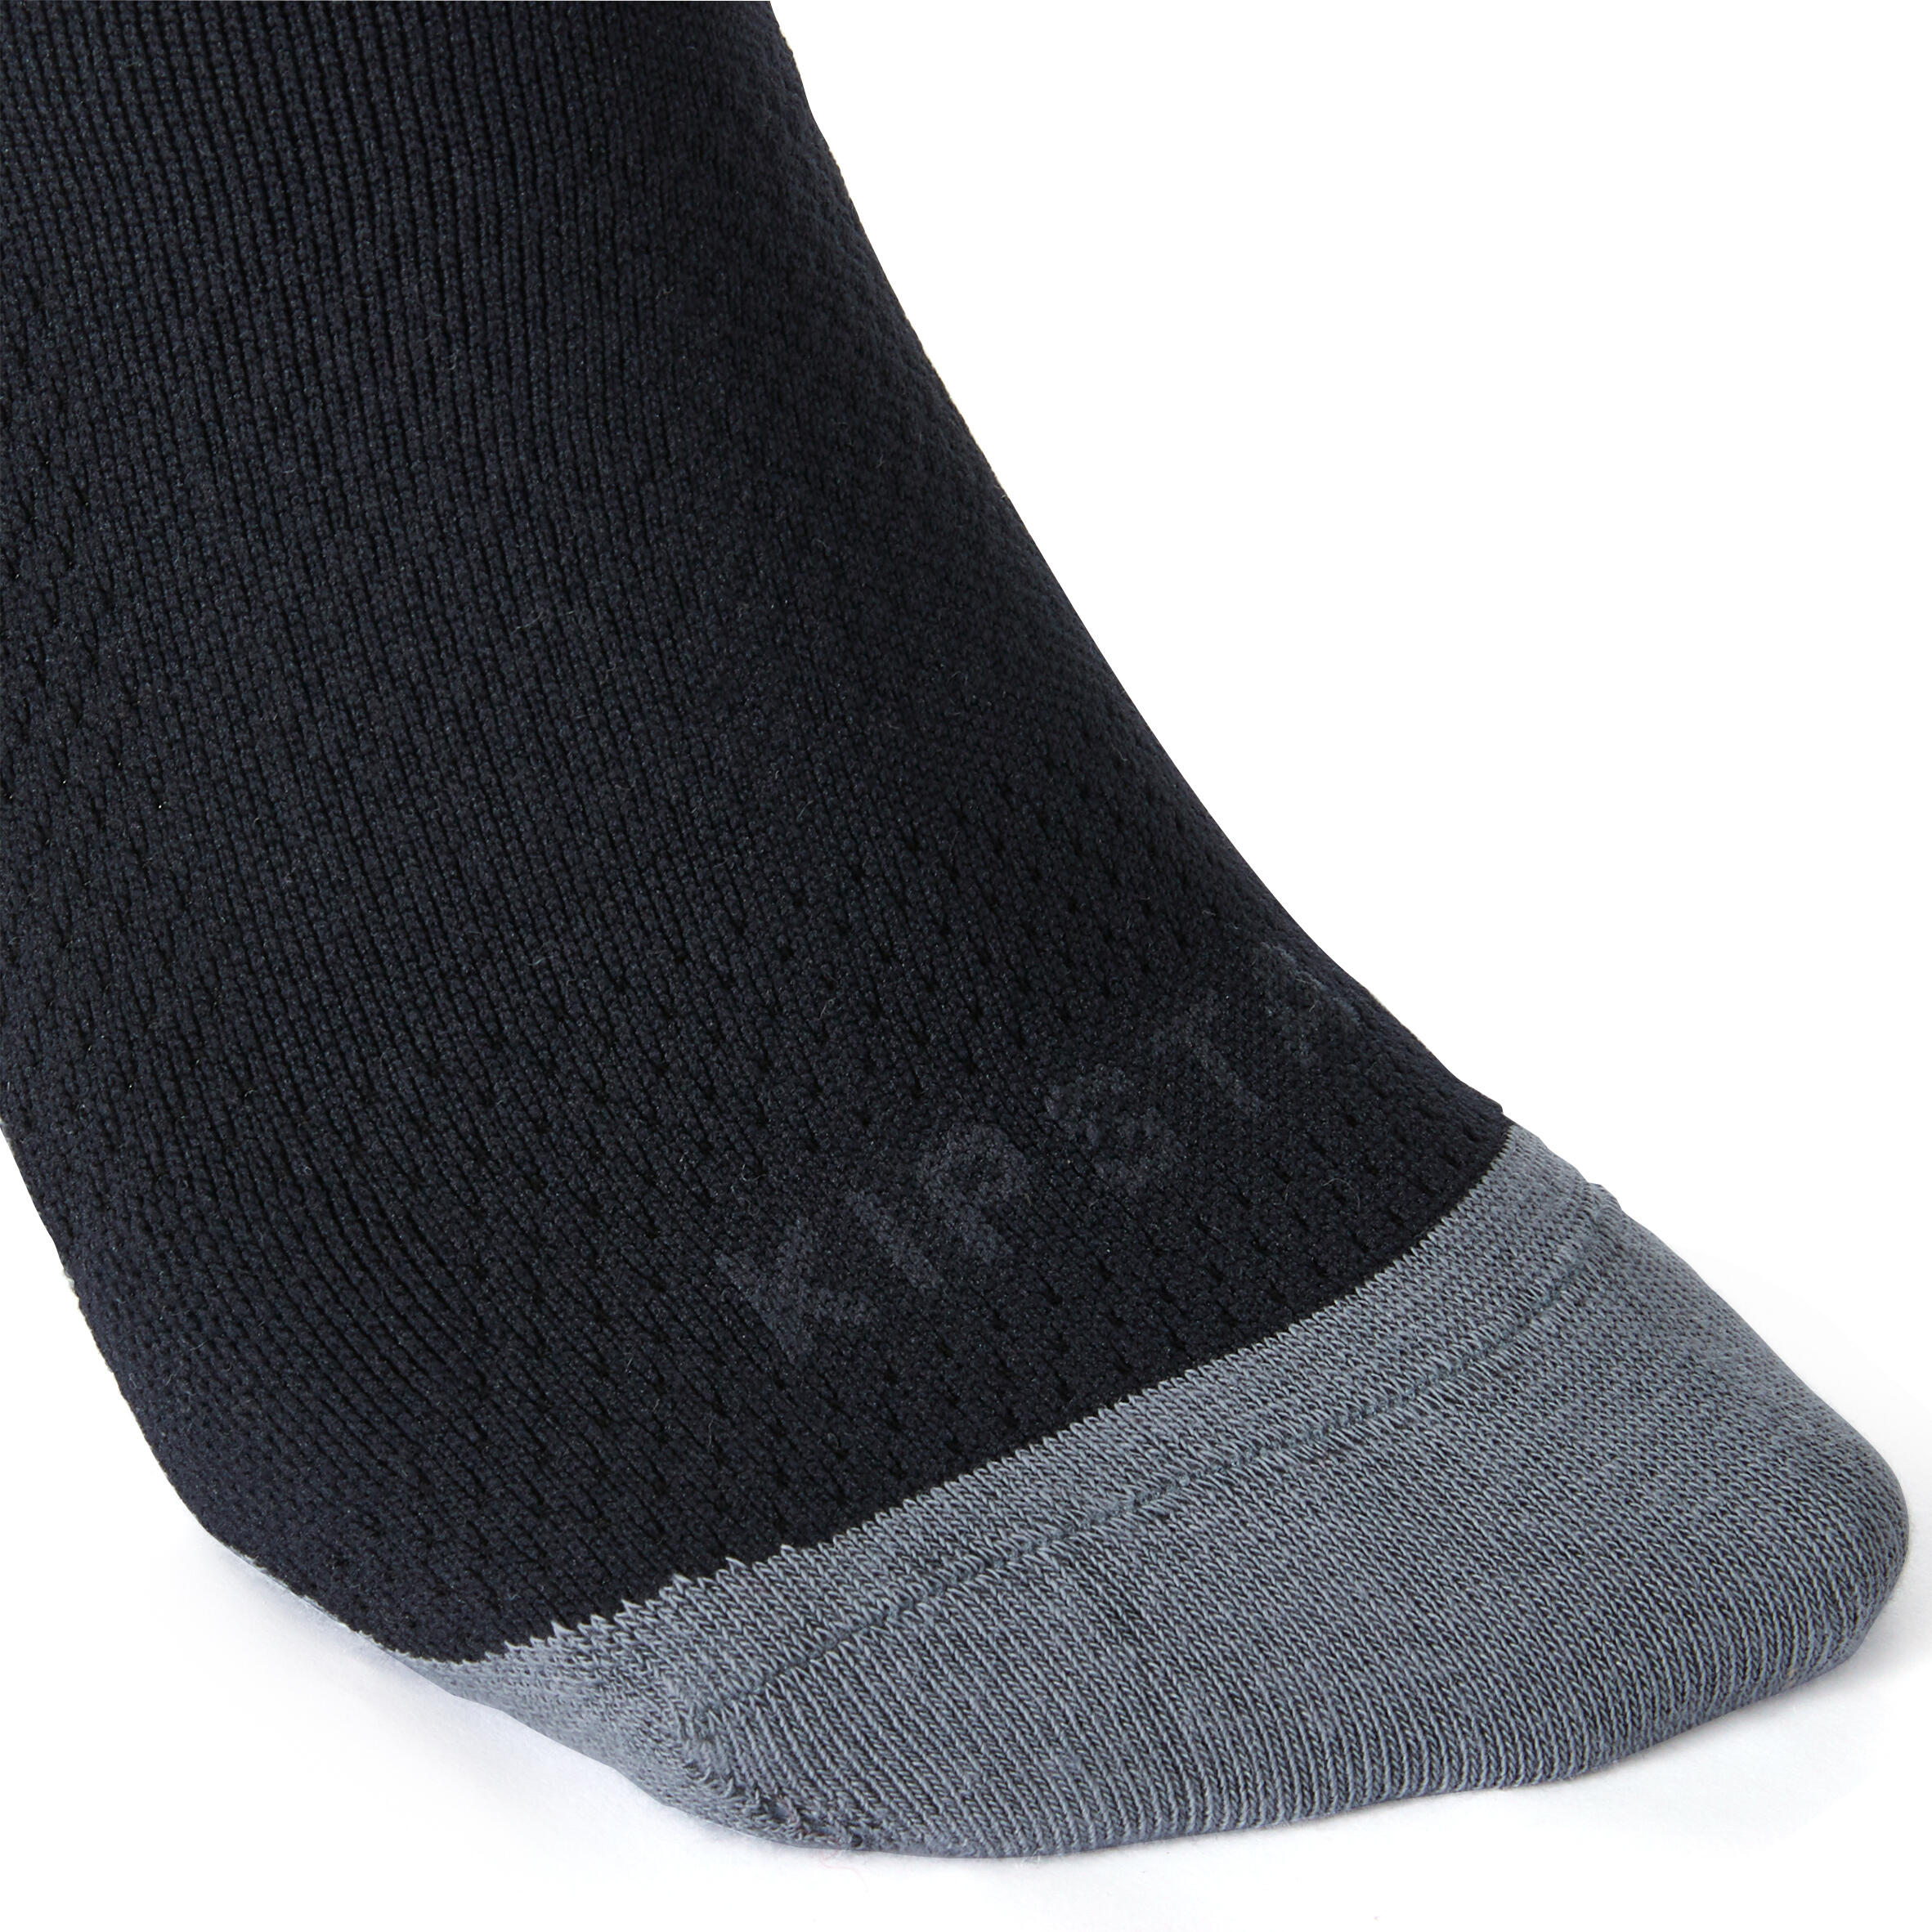 Football Socks CLR - Black 4/4